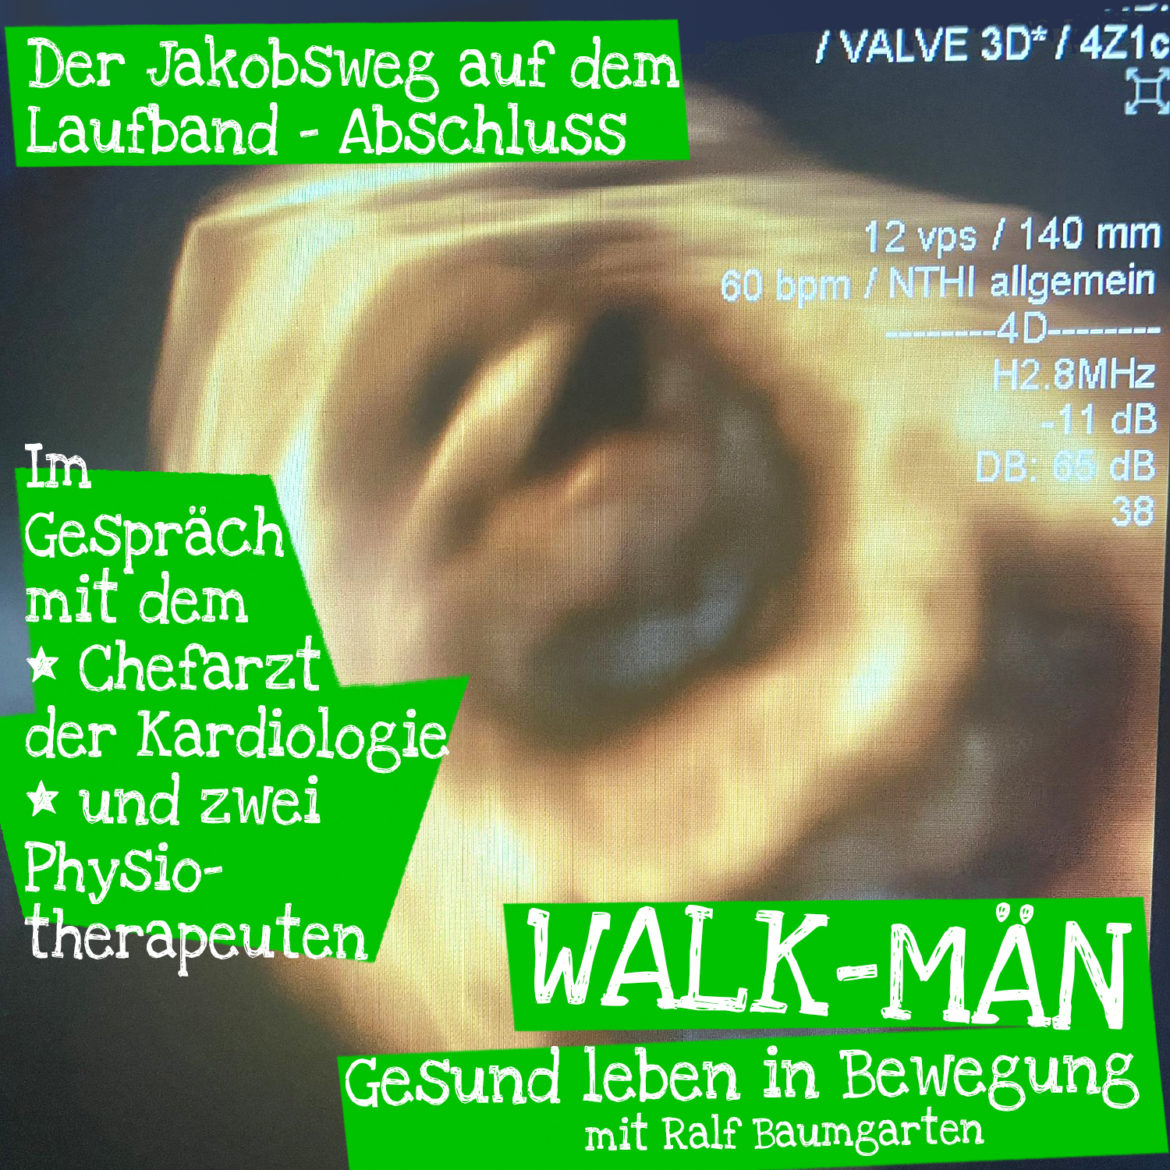 Walk-Män-Podcast: Jakobsweg auf dem Laufband – Was sagen die Ärzte?